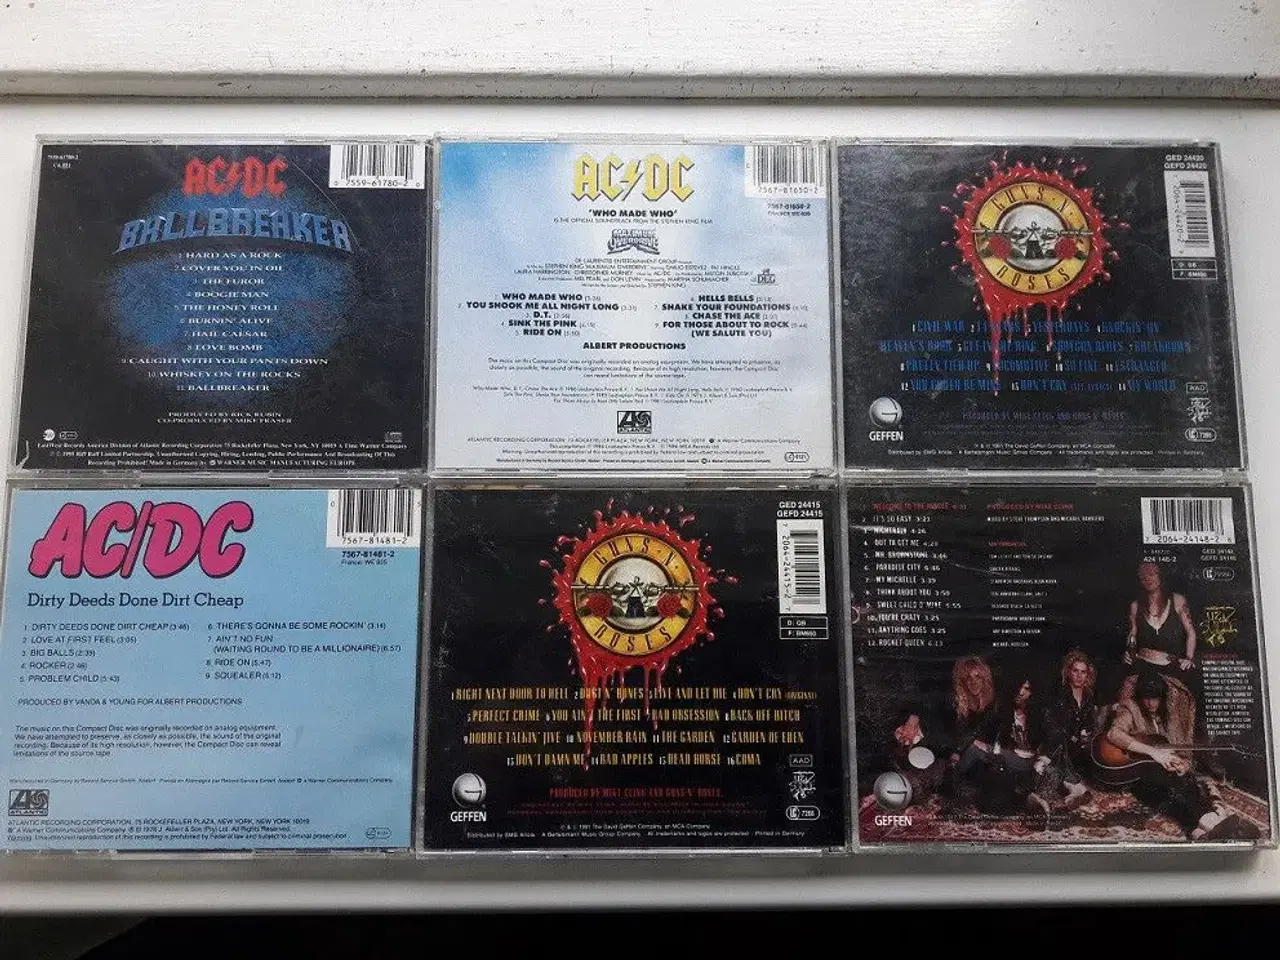 Billede 5 - 21 CD med rock musik fra 70.-80